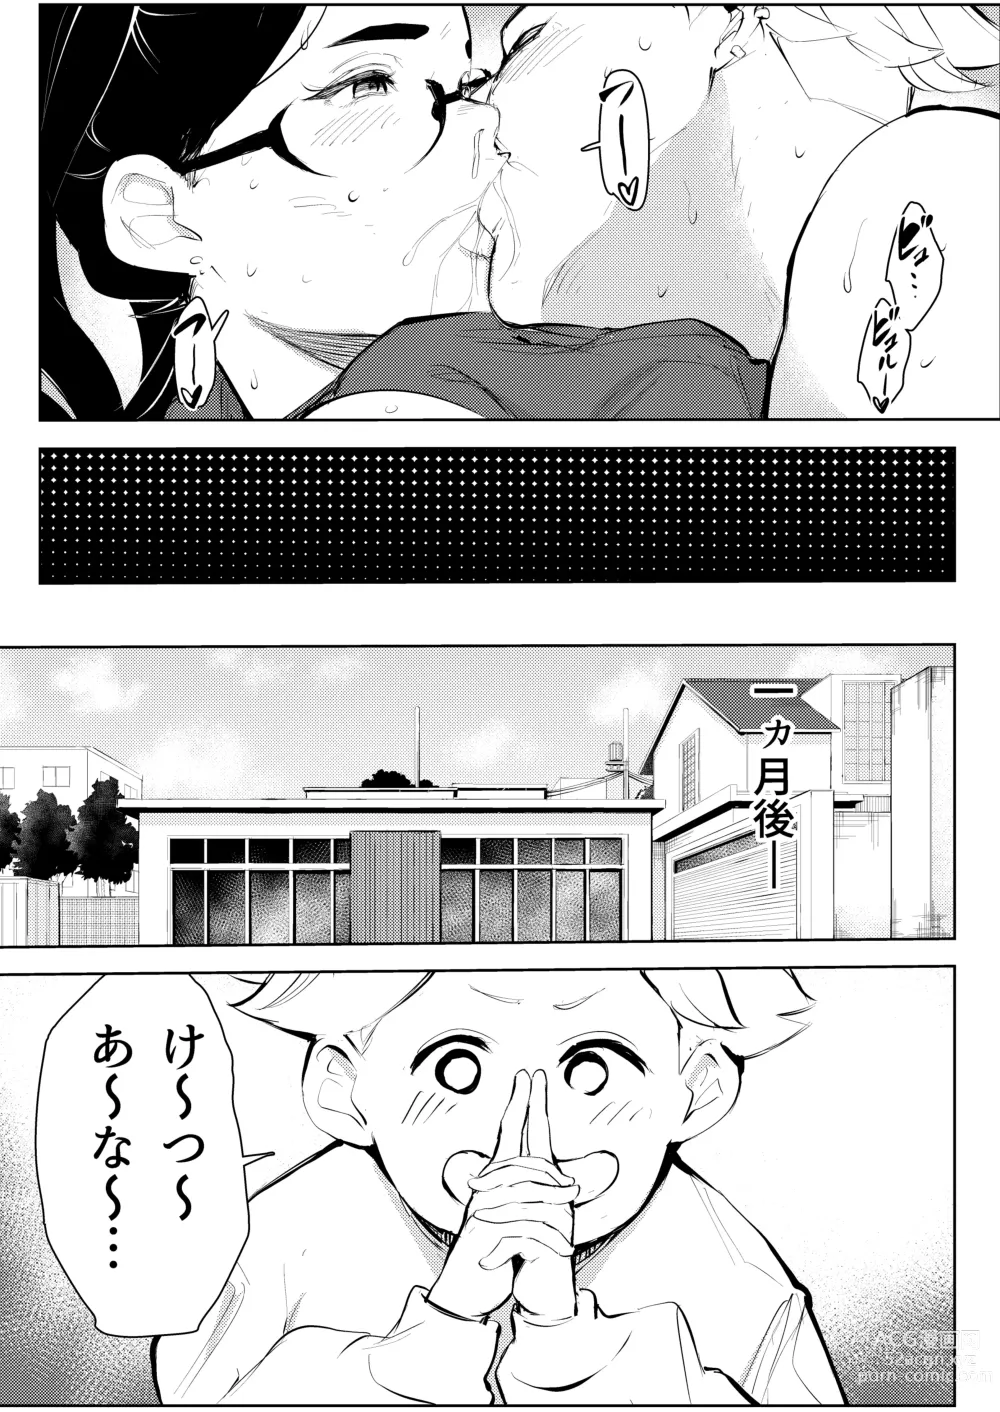 Page 38 of doujinshi 30-Sai hoiku-shi kon katsu pātī de deatta yarimoku ni jinsei dainashi ni sa reru